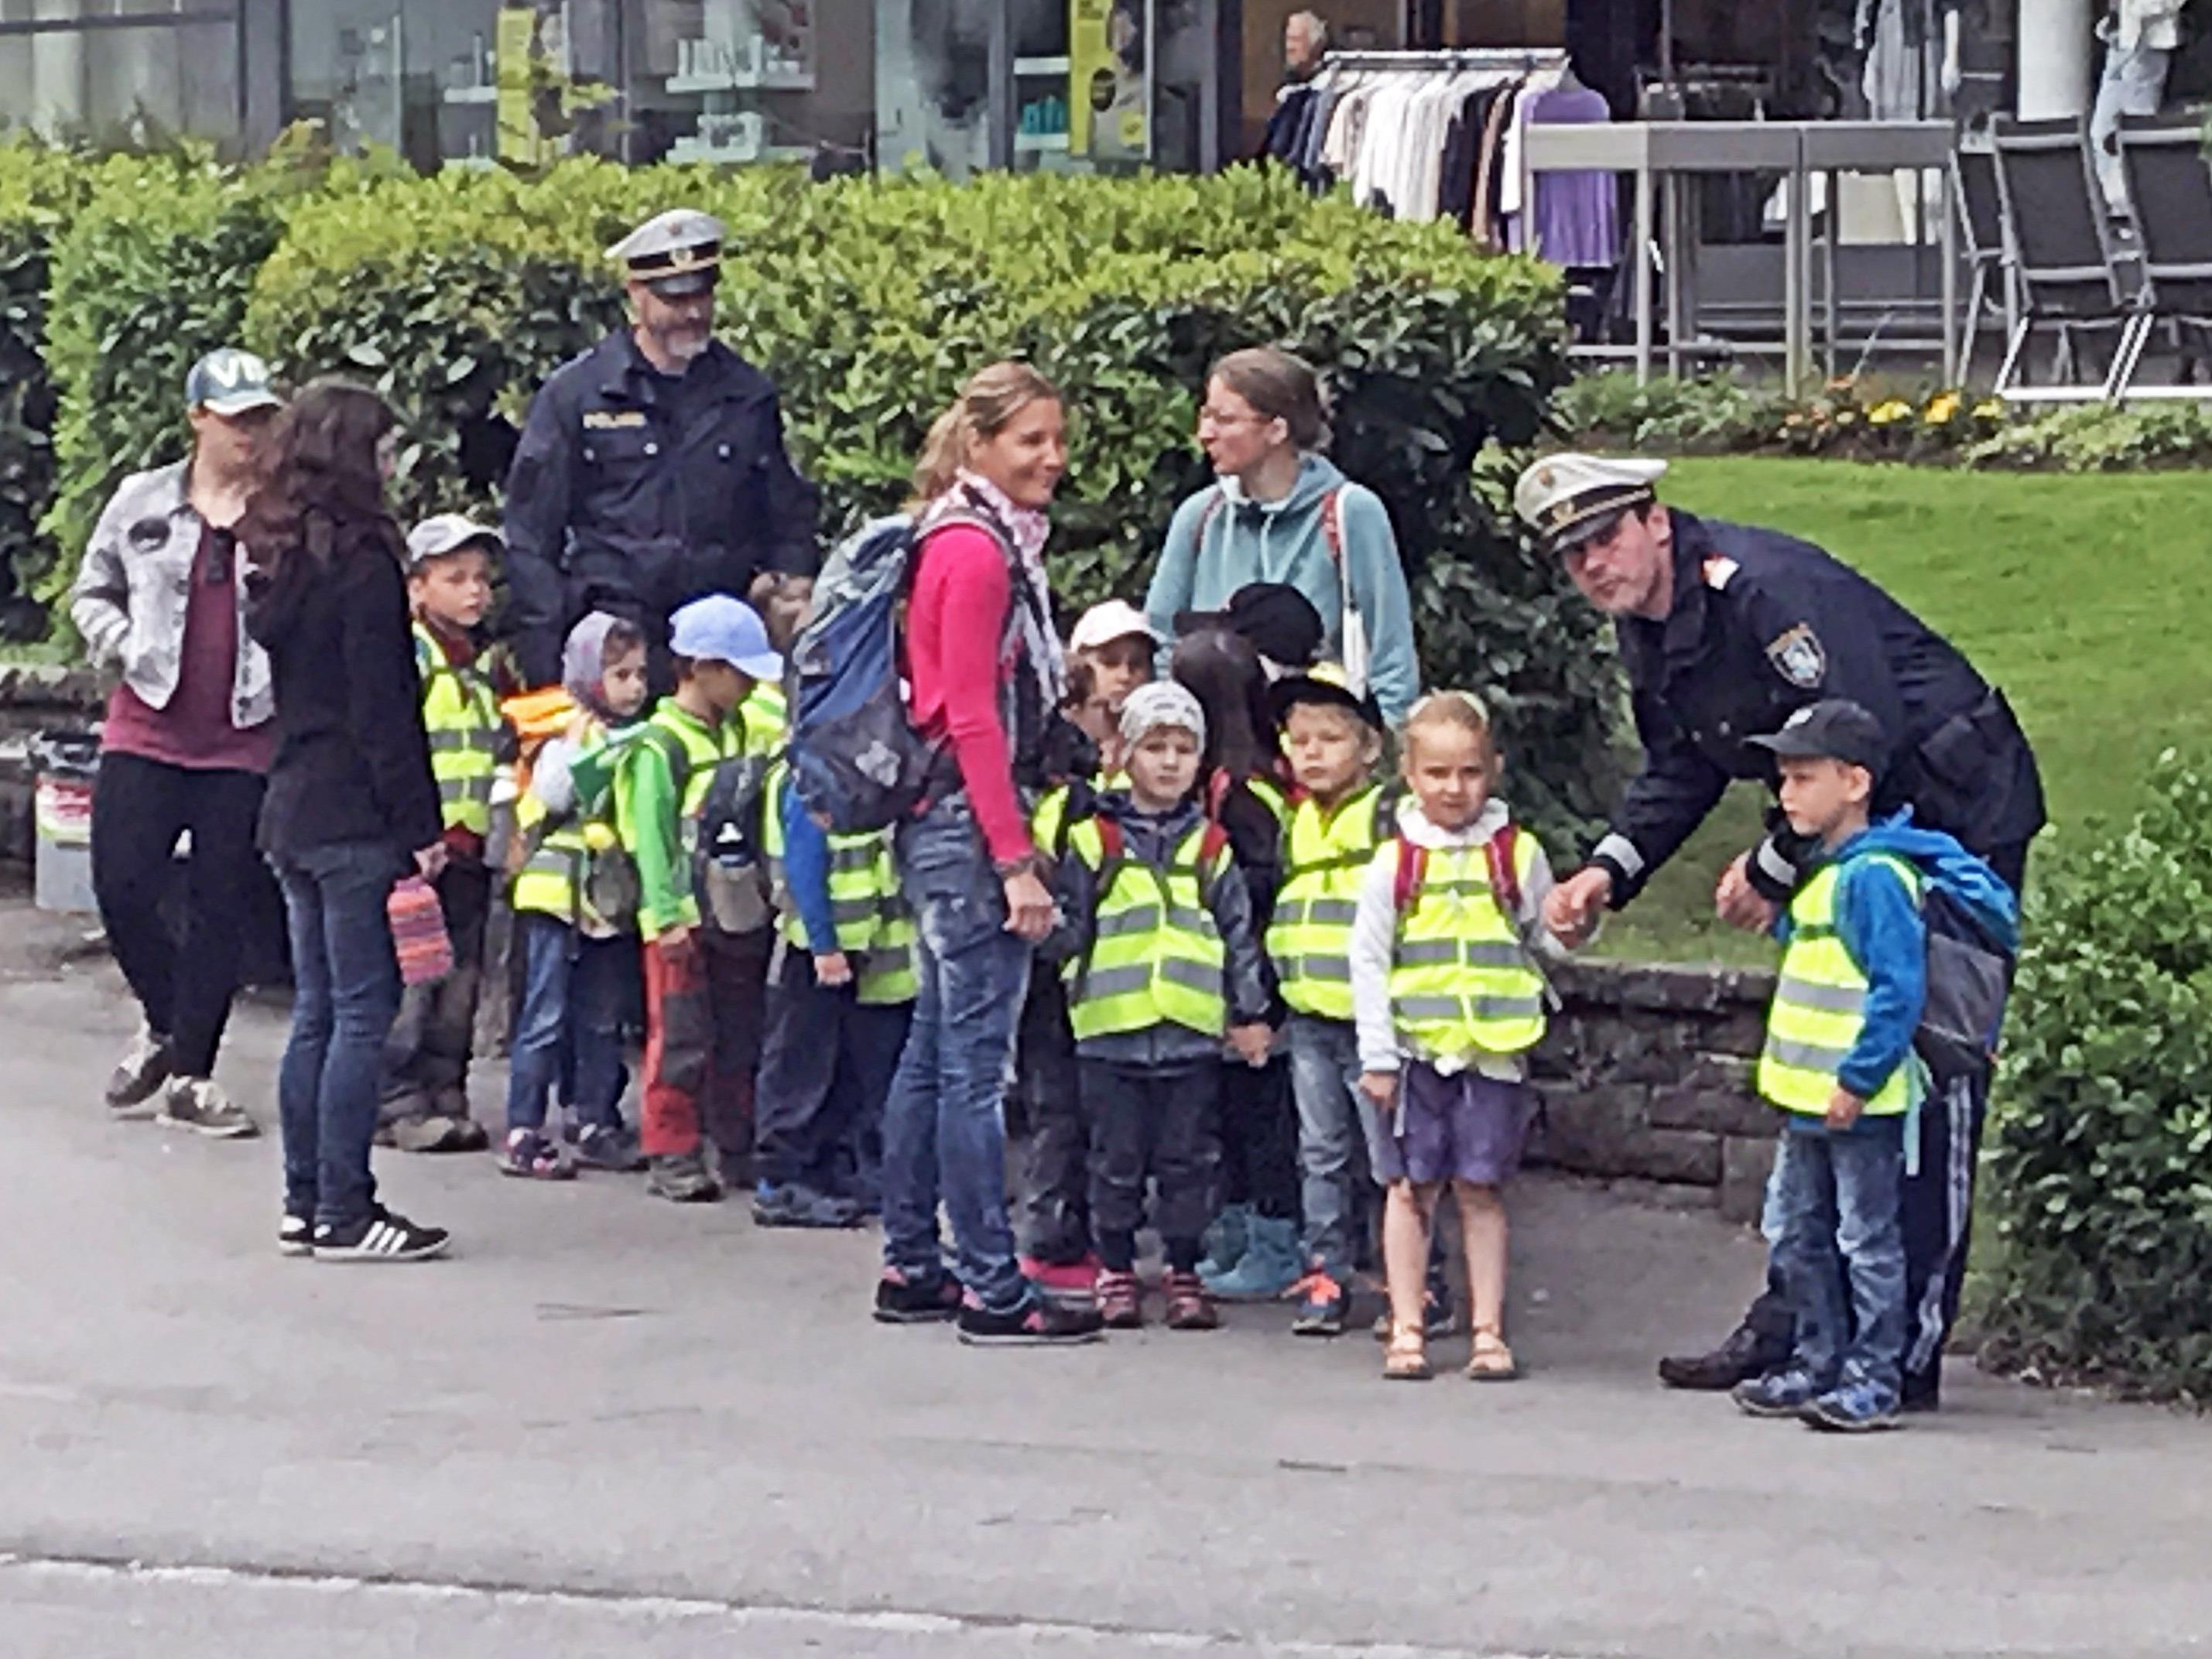 Der neue Stadtpolizist Markus Mattle (4. v. l.) war zum ersten Mal dabei und hatte sichtlich Spaß an der Übung mit den Kindern.